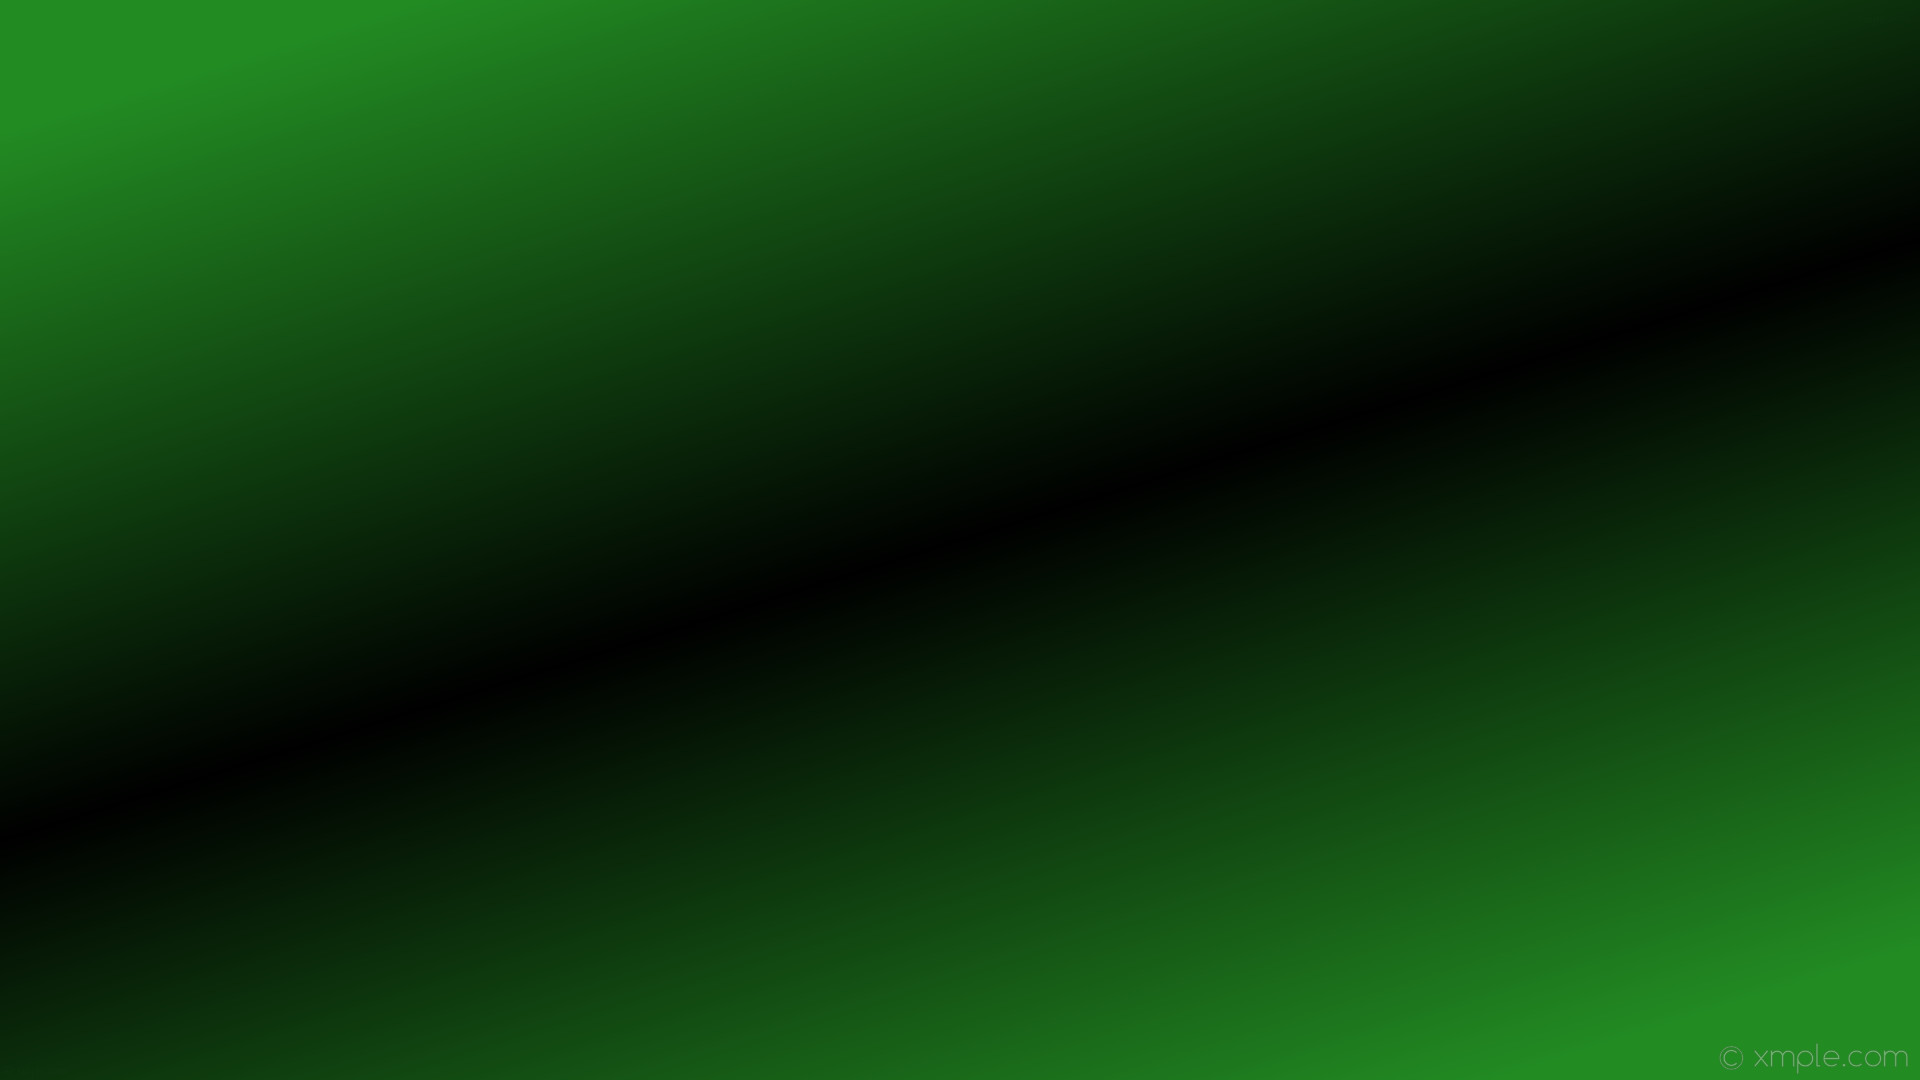 1920x1080 wallpaper linear green black gradient highlight forest green #228b22  #000000 315Â° 50%